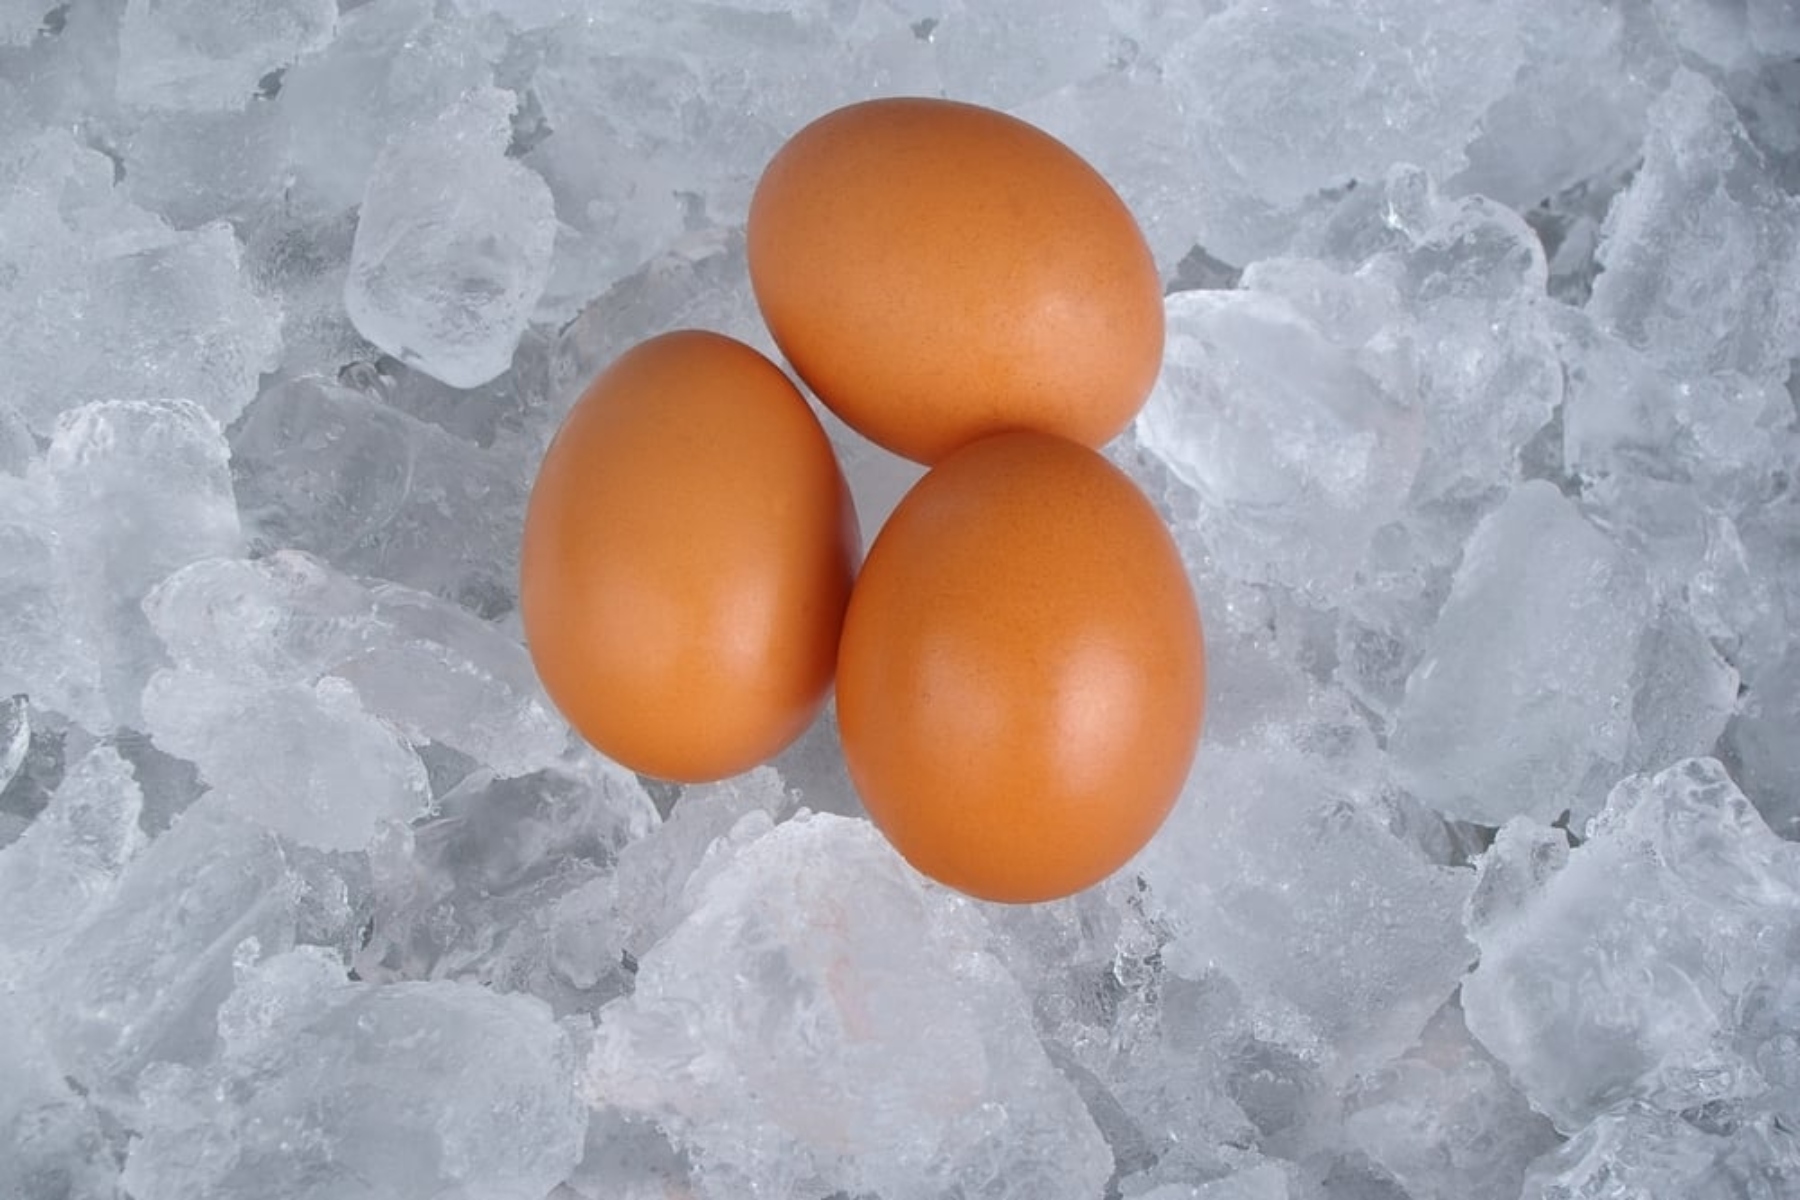 Kατάψυξη ωαρίων: Λόγοι για τους οποίους πρέπει να καταψύξετε τα ωάριά σας